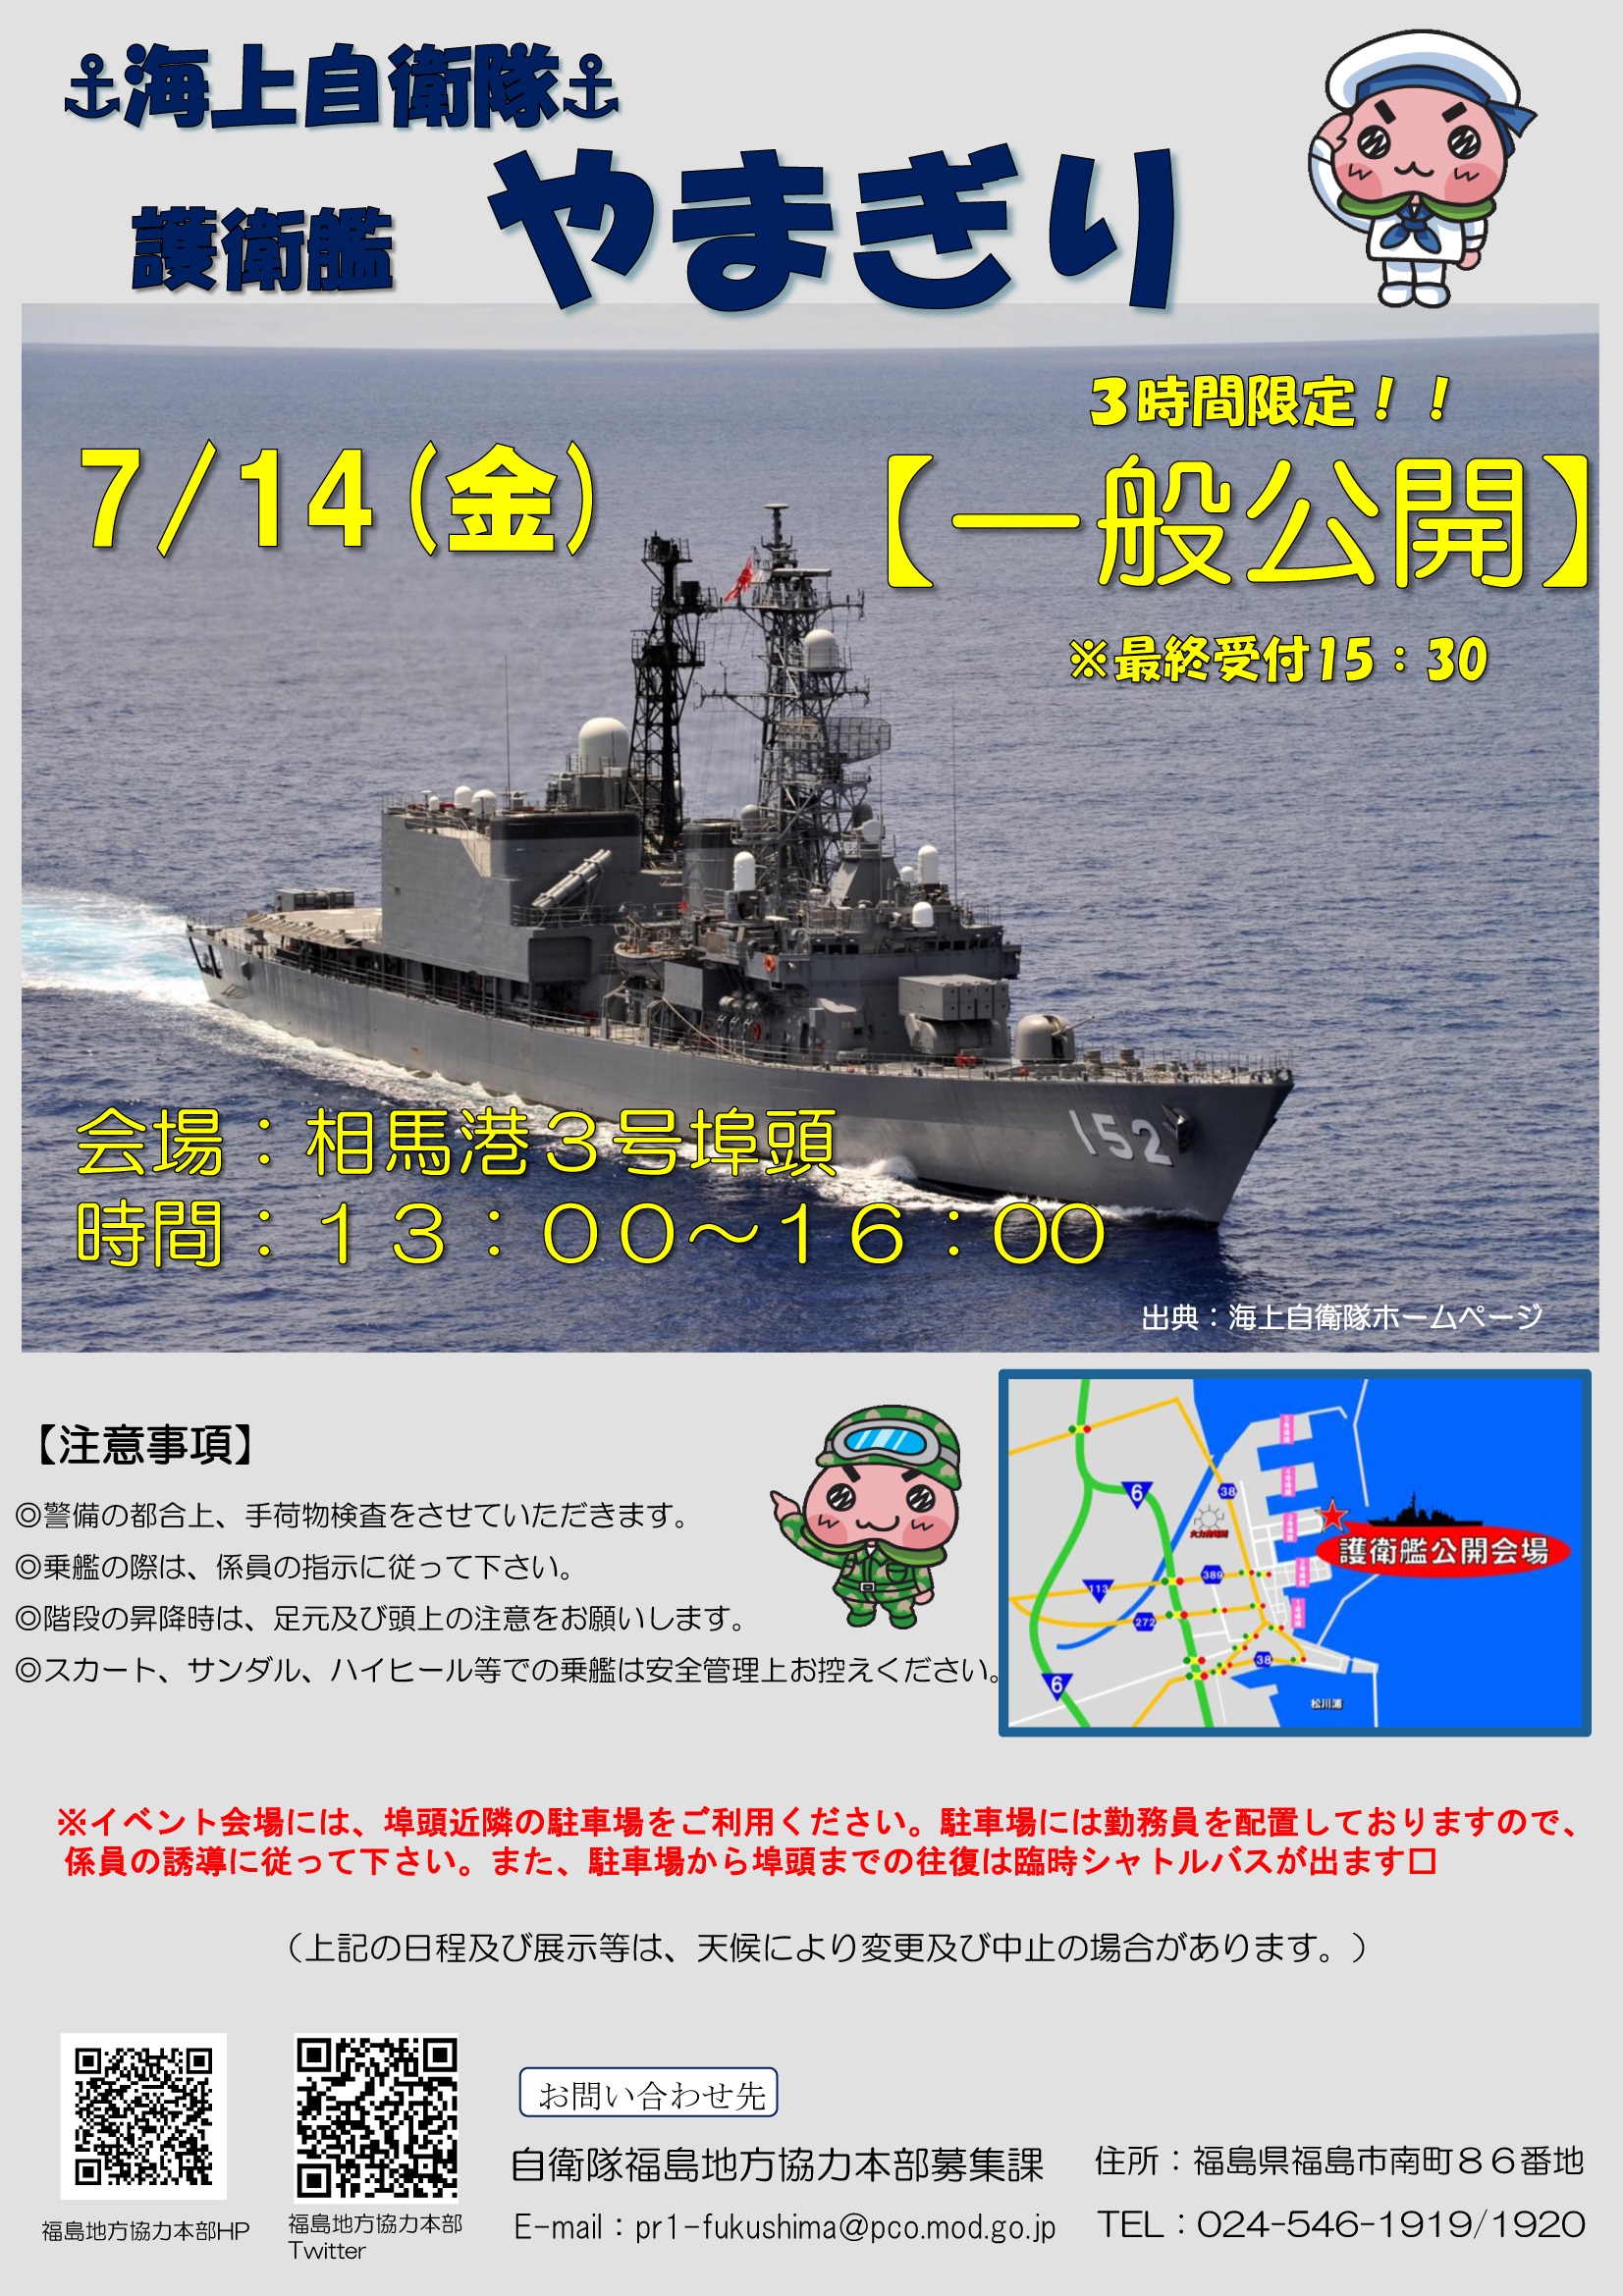 海上自衛隊 護衛艦「やまぎり」一般公開 in 相馬港：ポスター